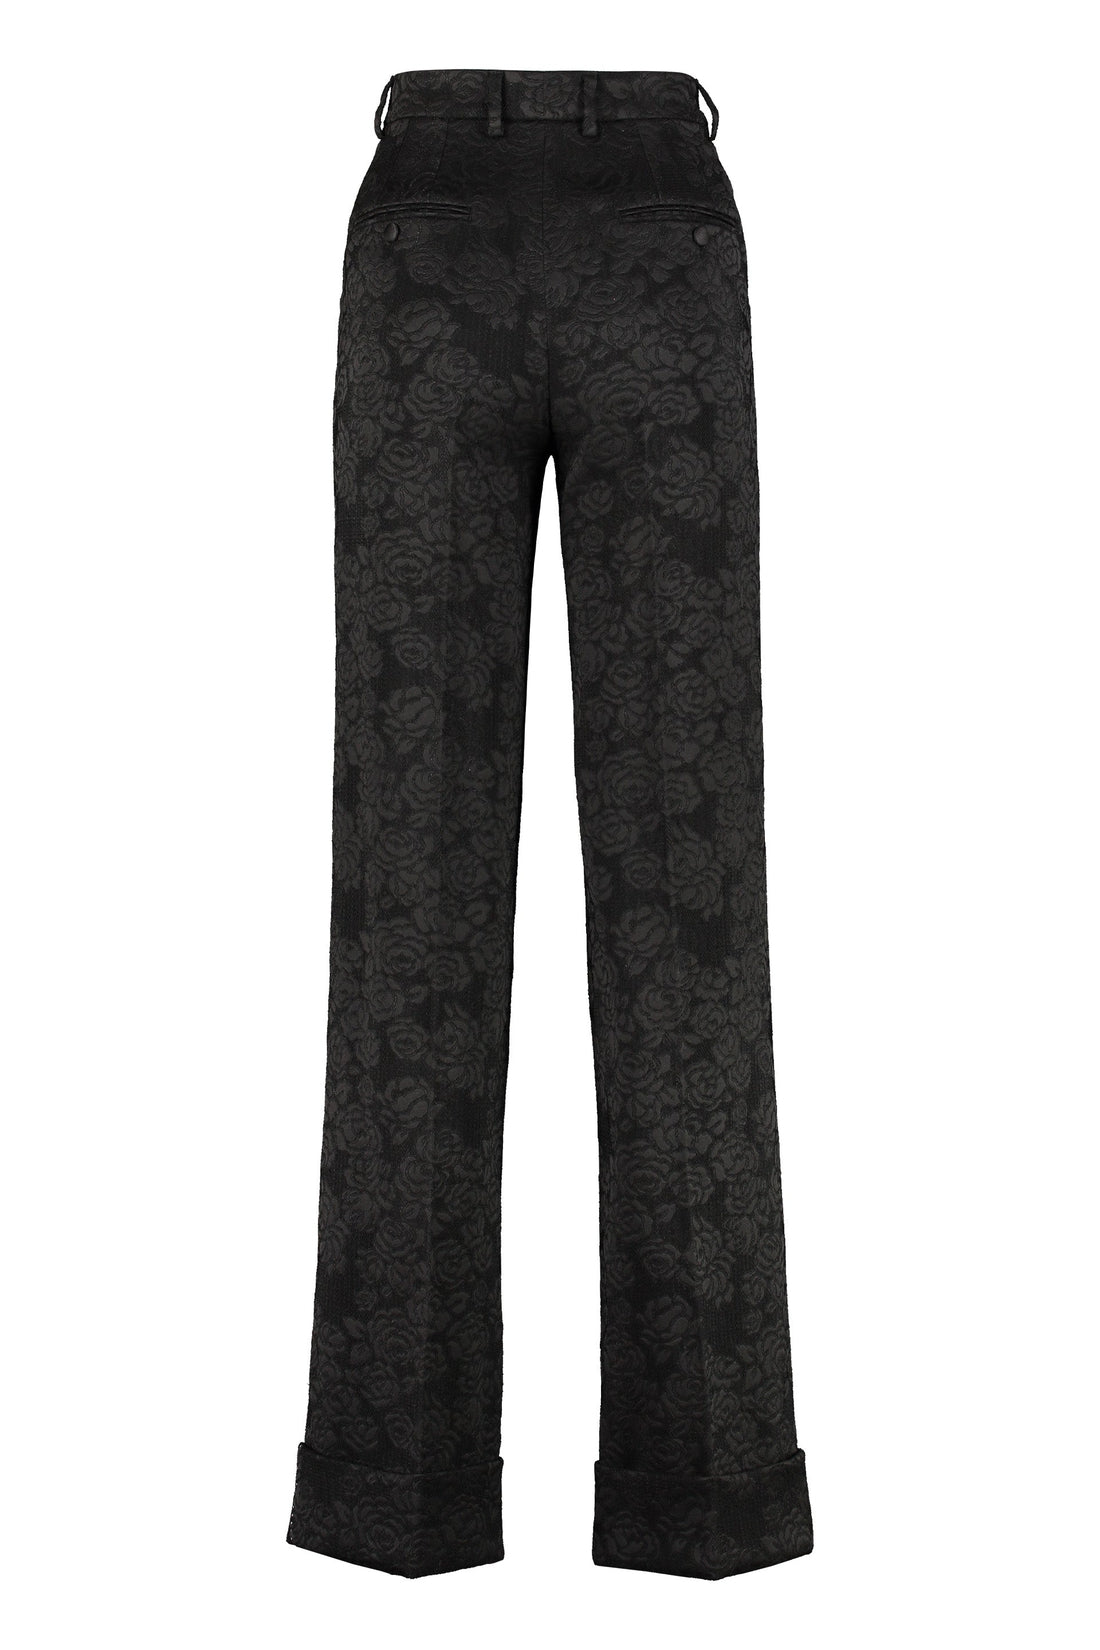 Dolce & Gabbana-OUTLET-SALE-Jacquard trousers-ARCHIVIST